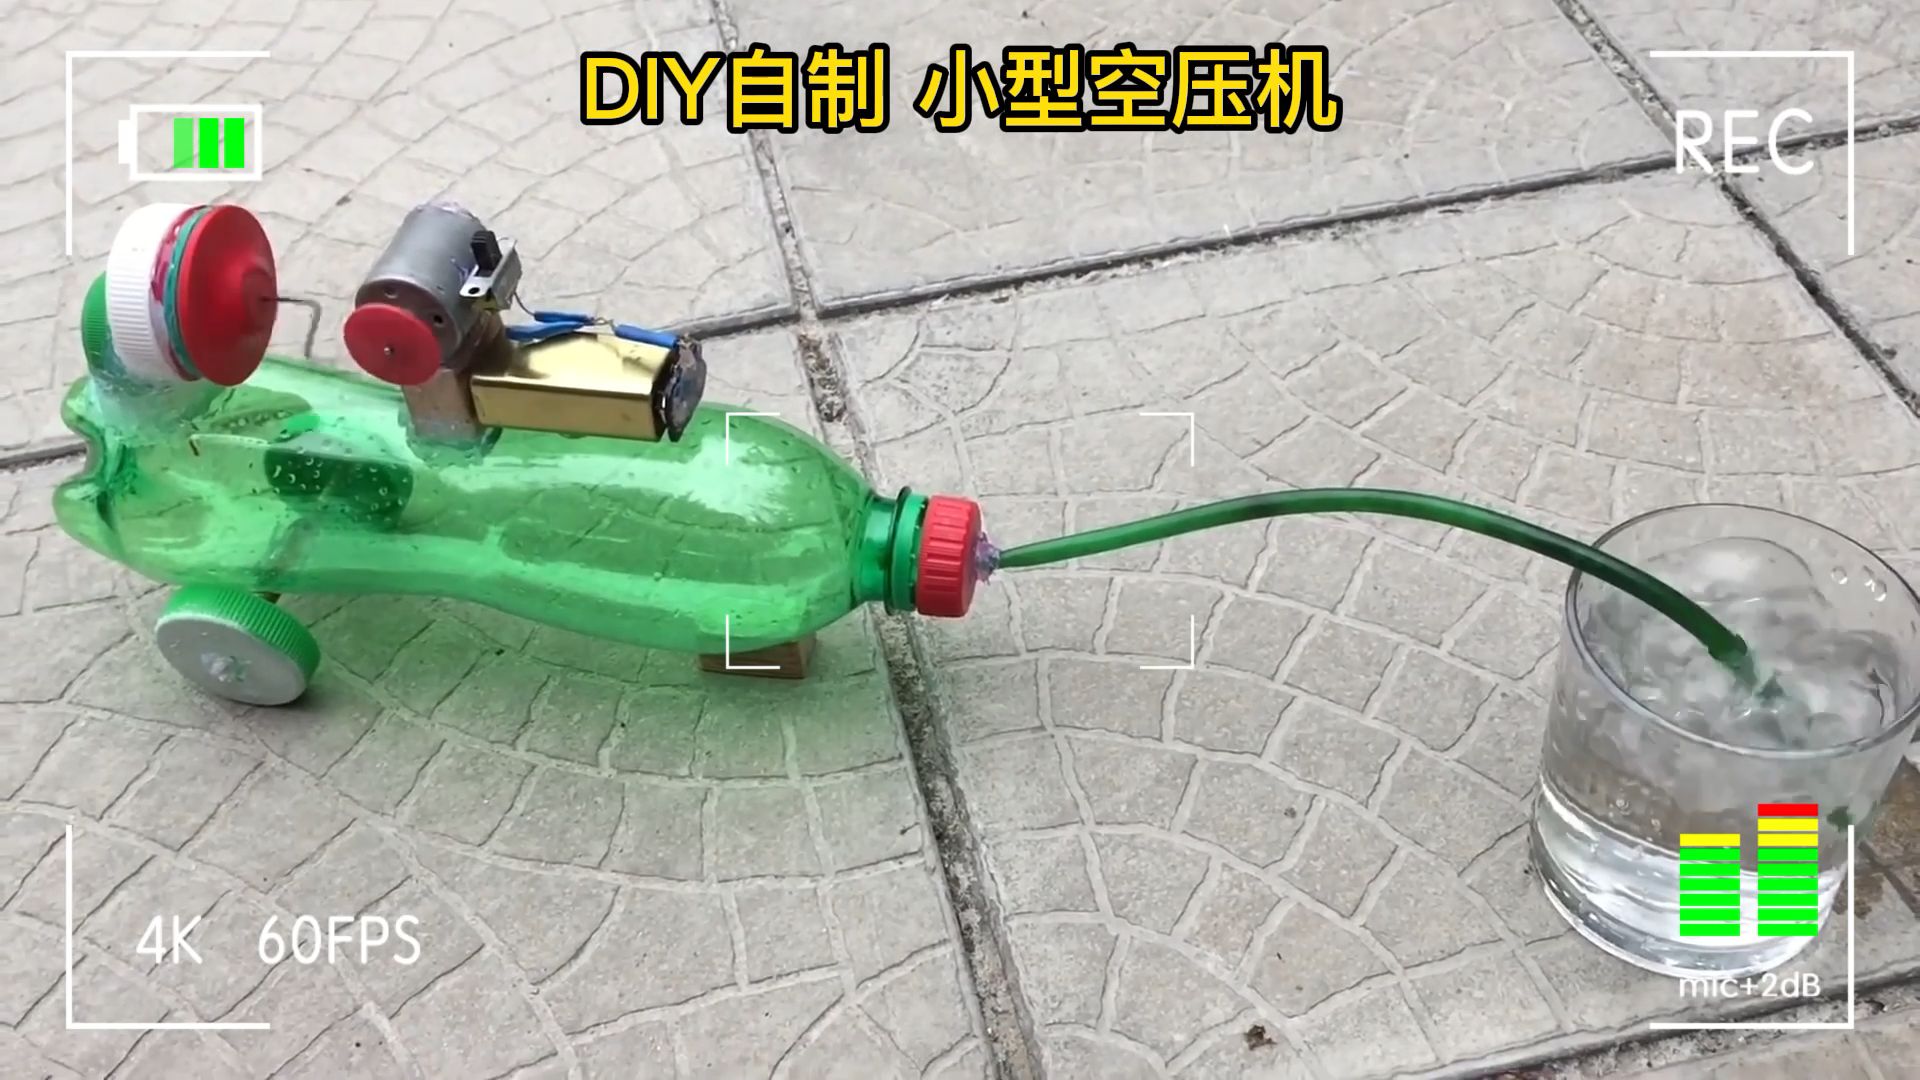 DIY小型气泵空压机